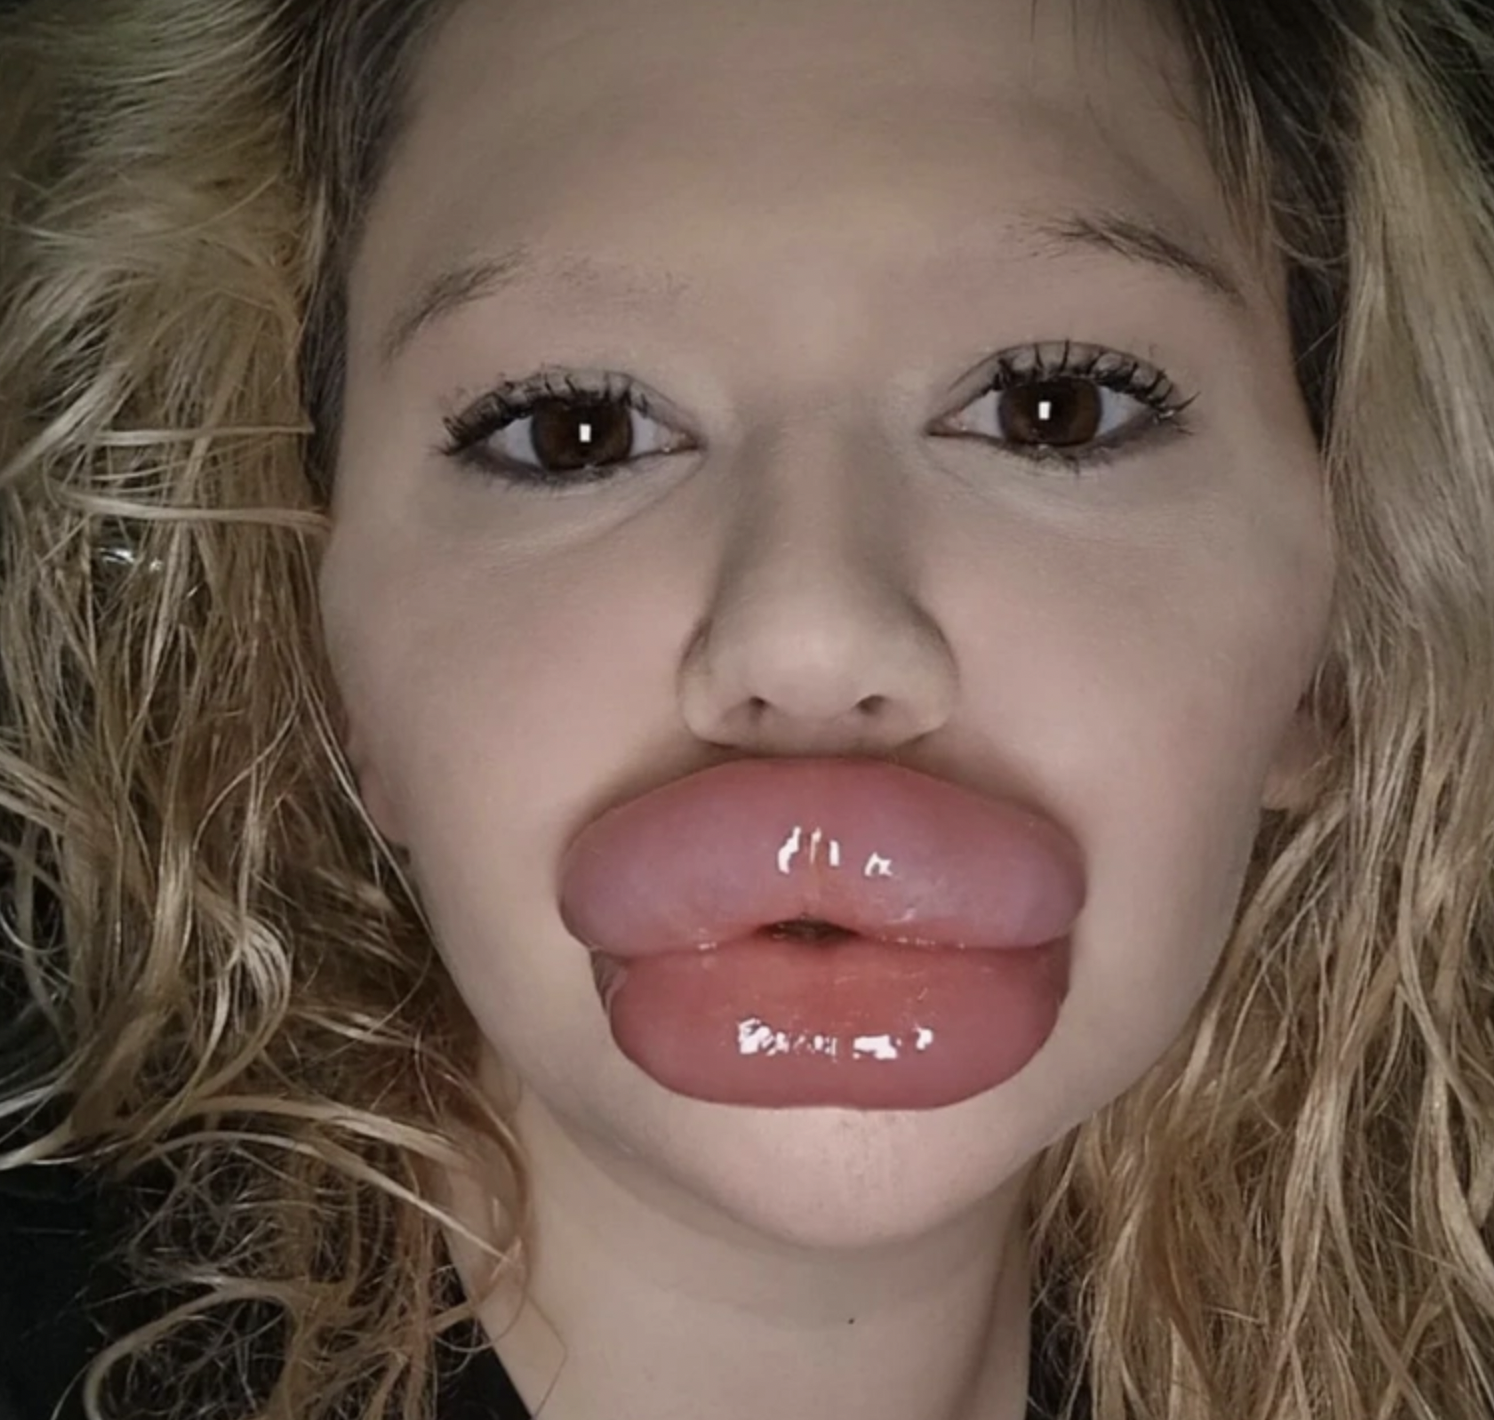 Dünya rekoru: 32 ameliyat sonucunda dünyanın en büyük dudaklarına sahip oldu